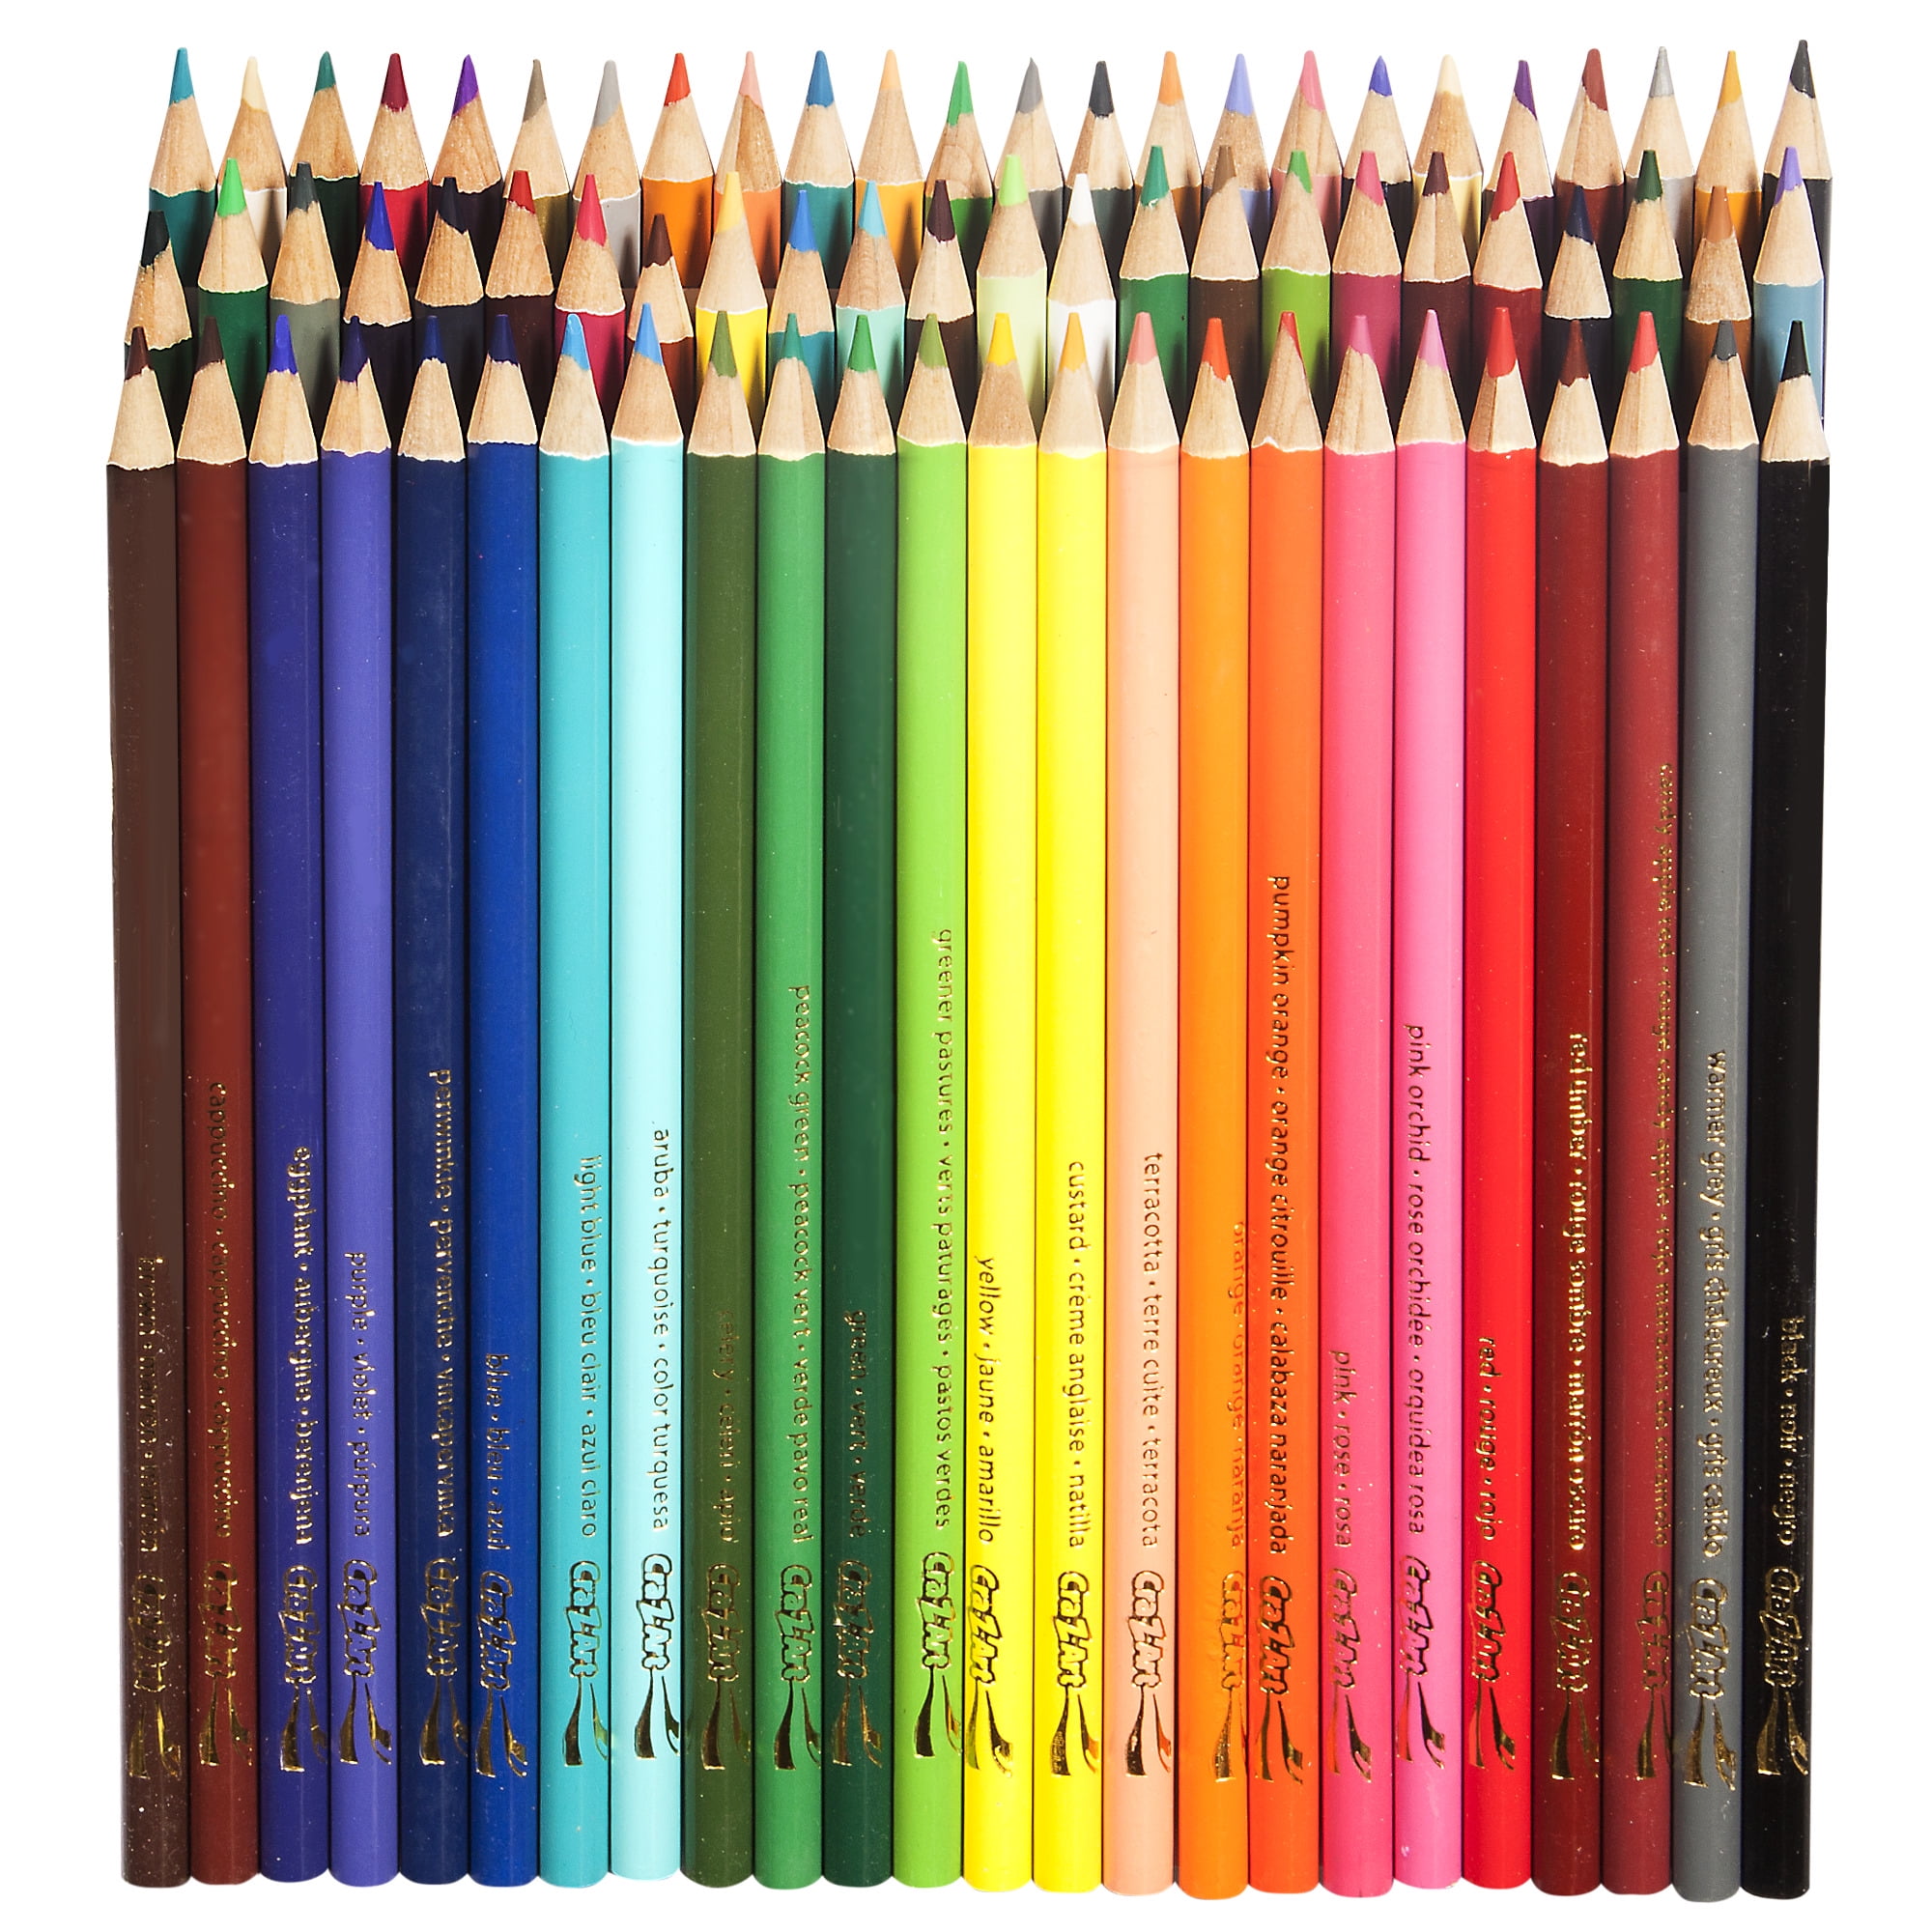 72 Cra-Z-Art Colored Pencils Bright Vivid &Classic Assorted Colors Crazy Art  NEW